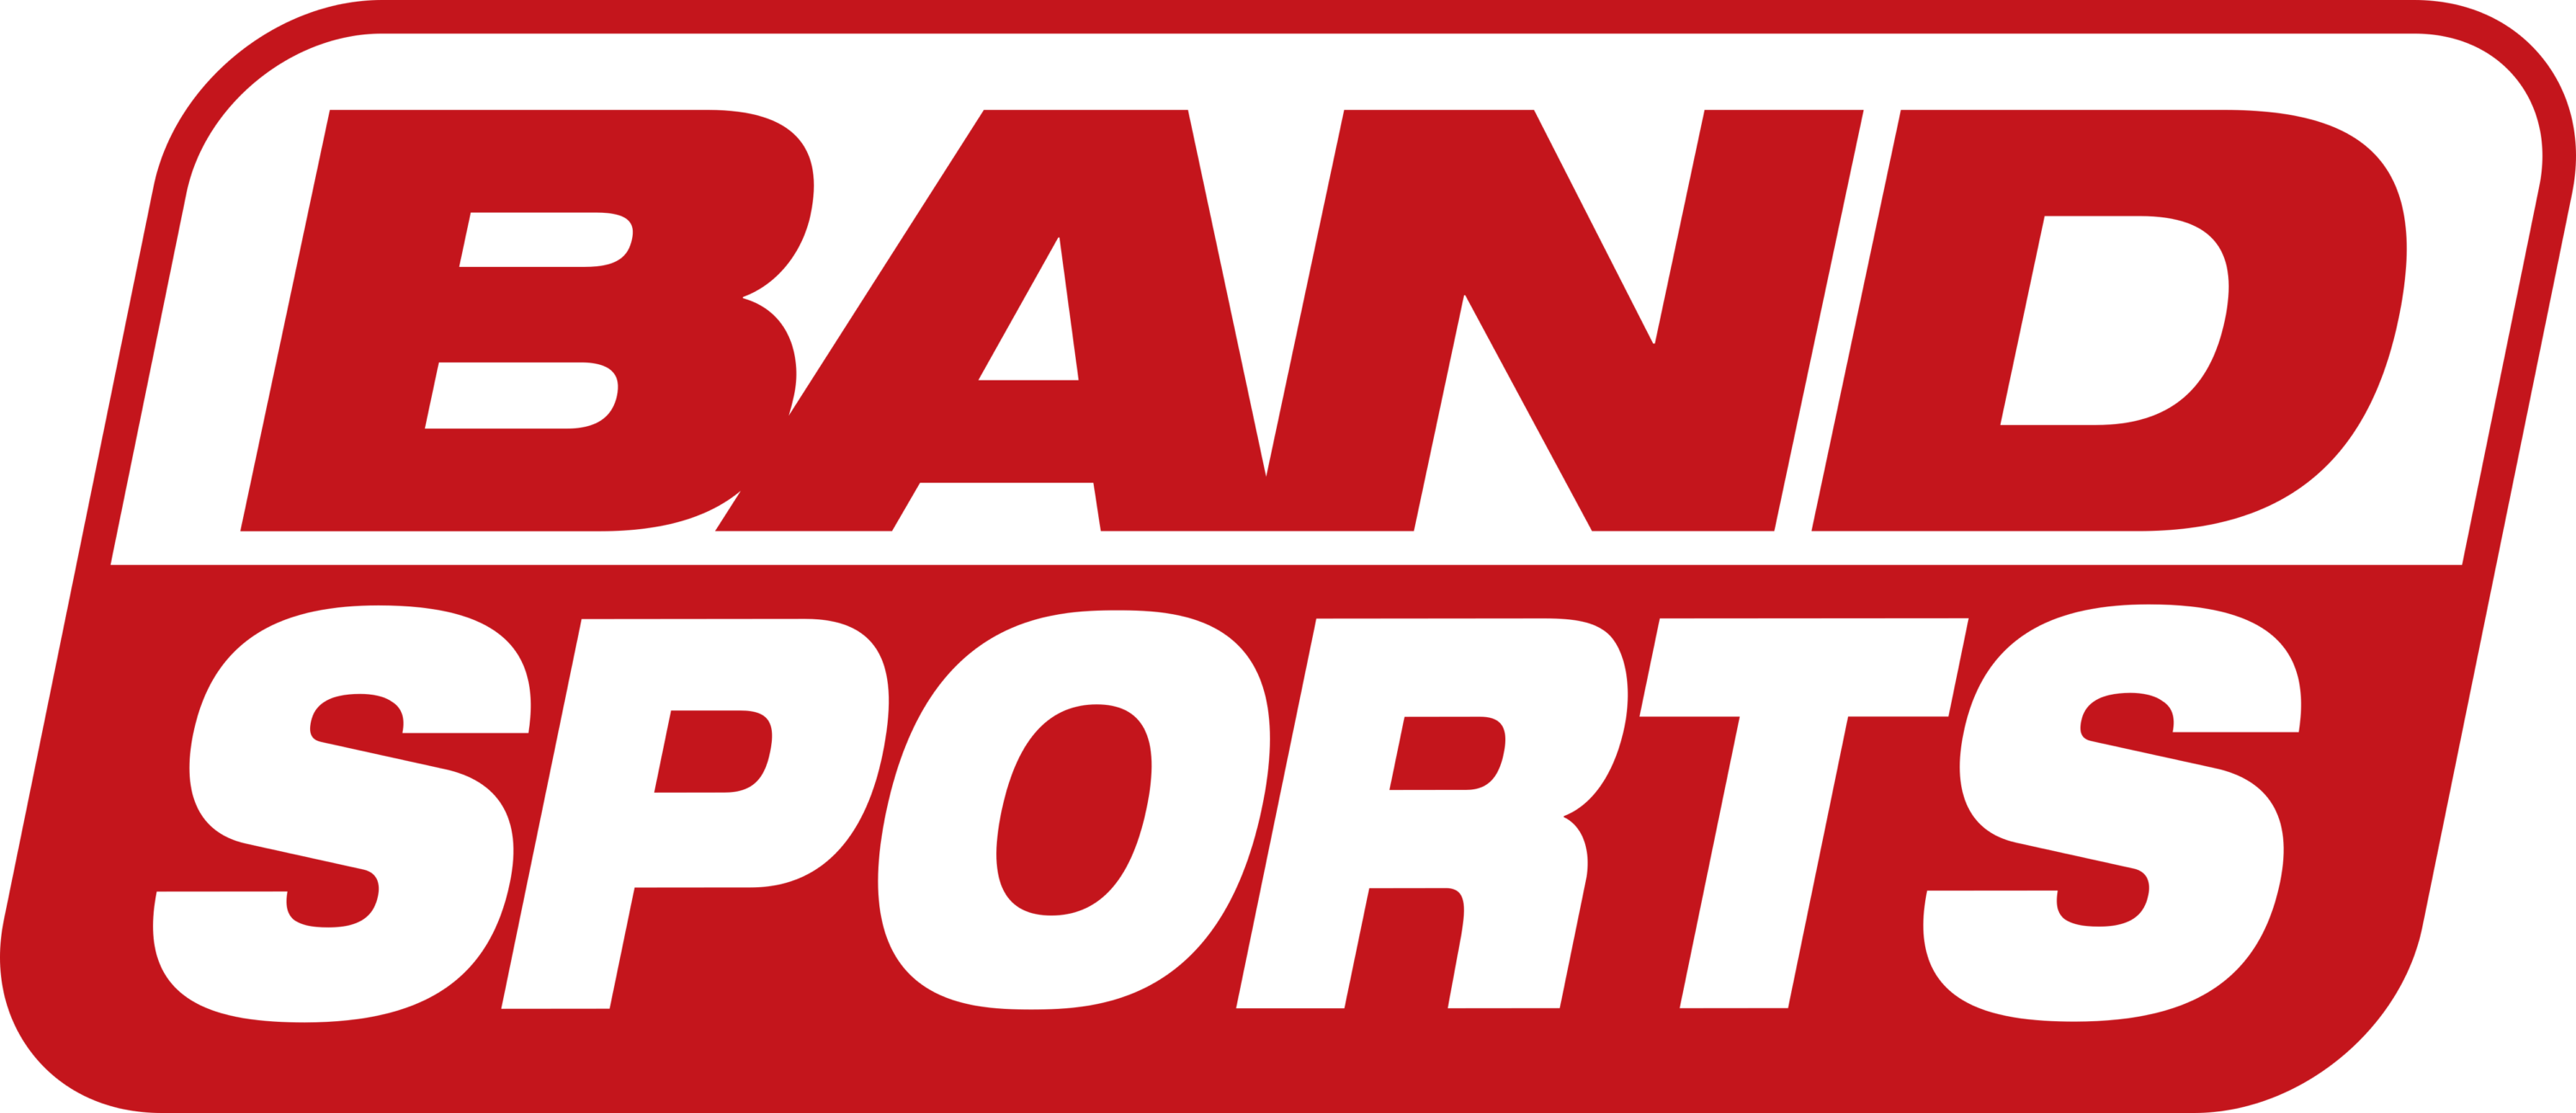 BandSports TV Logo